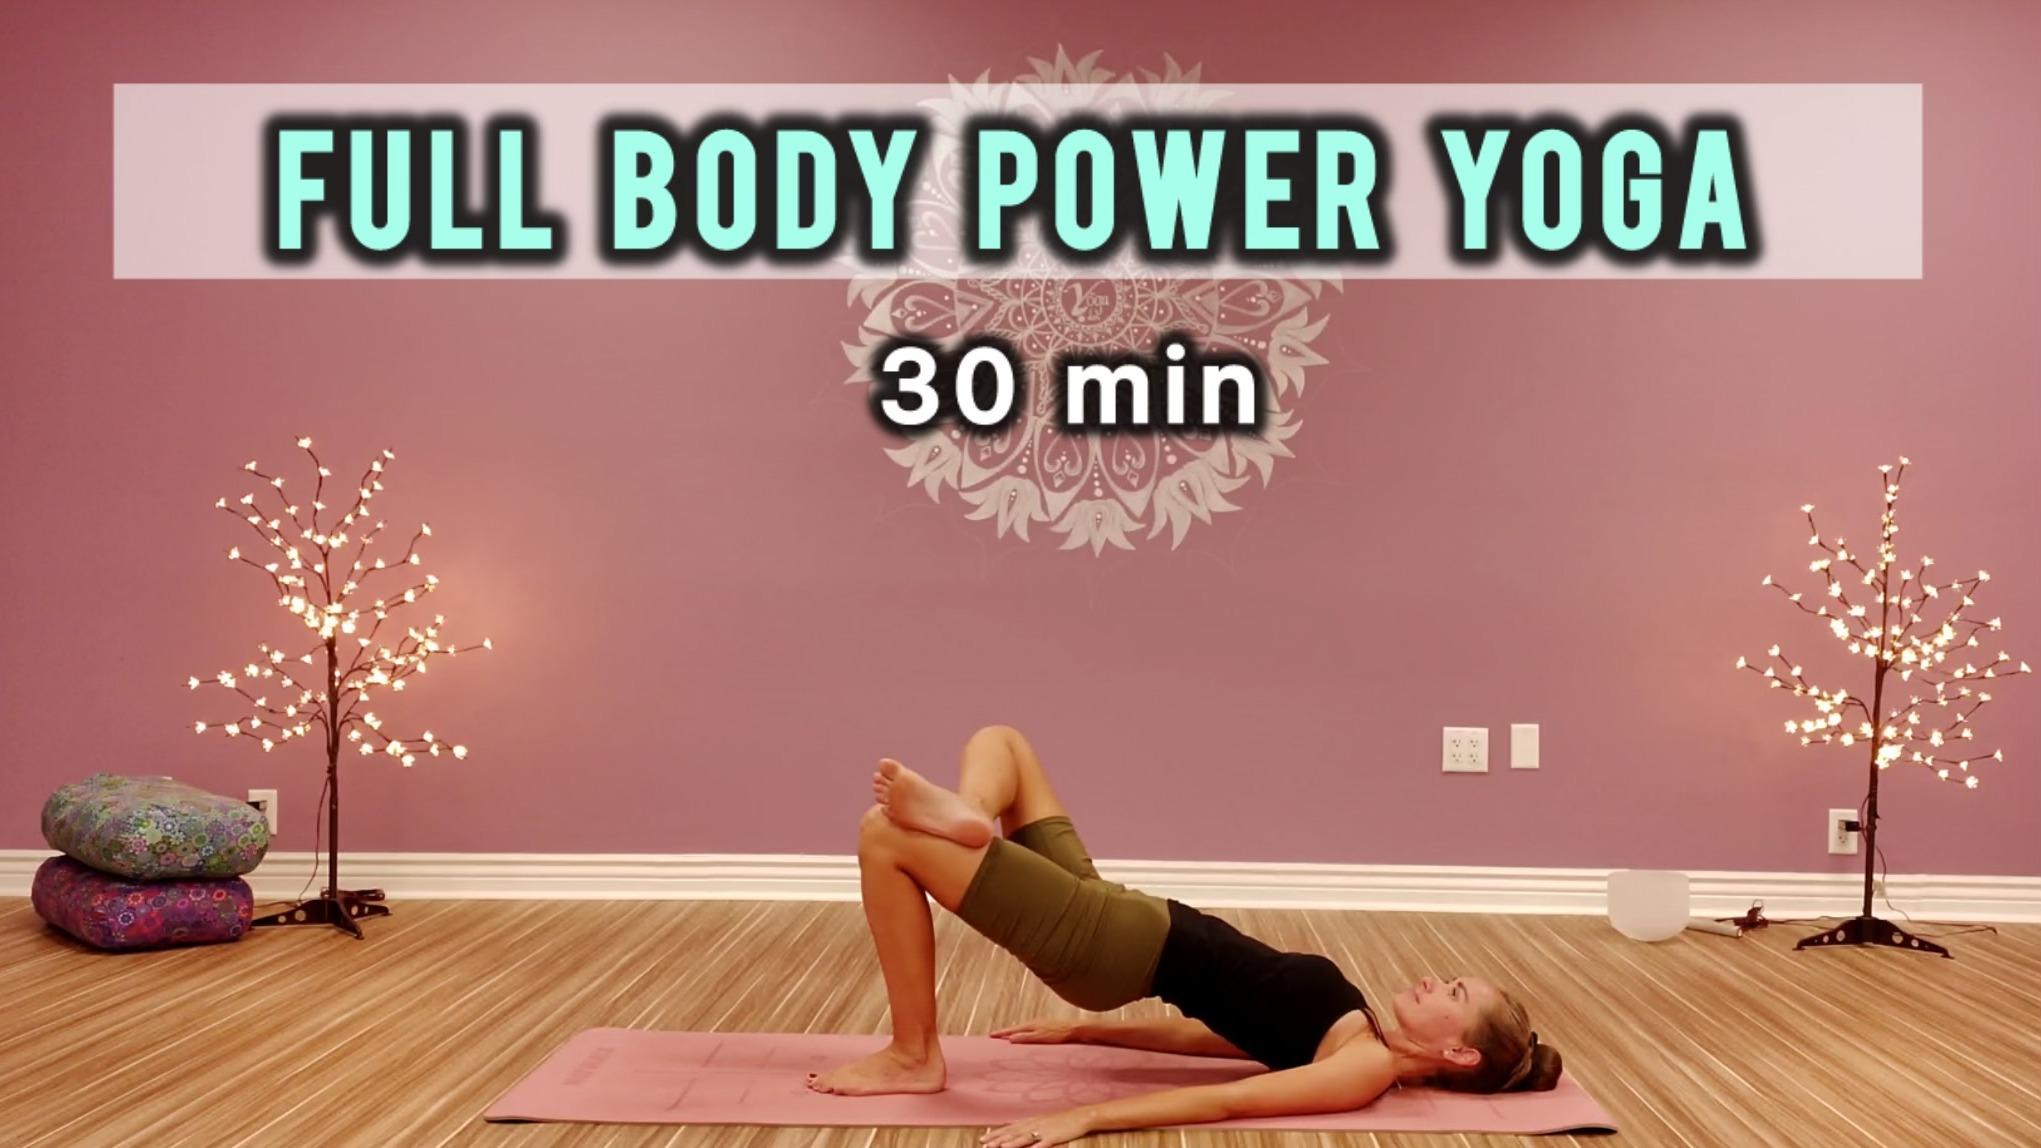 Full body power yoga